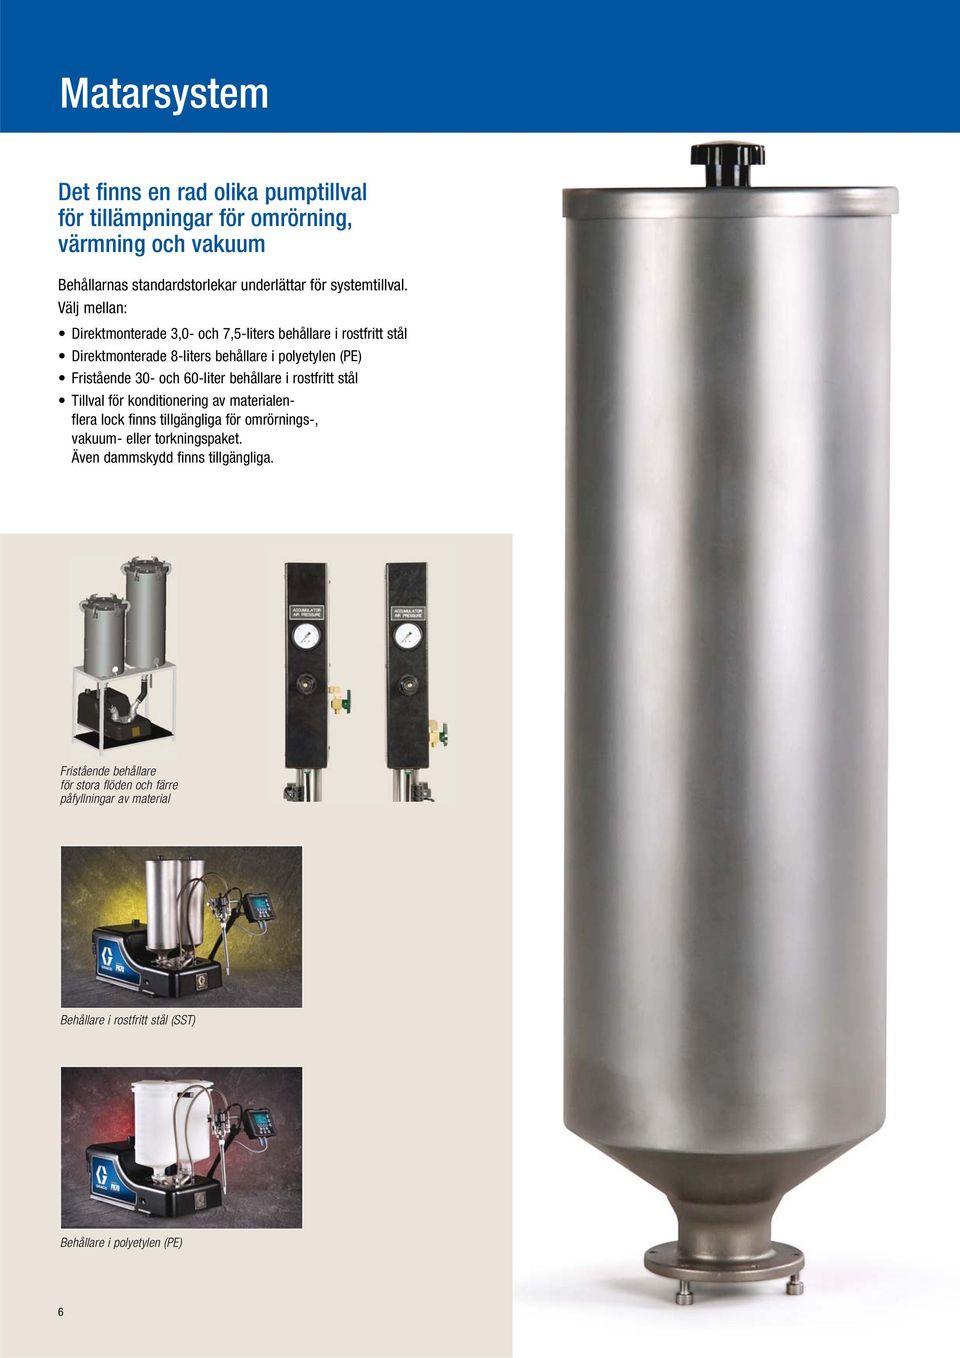 Välj mellan: Direktmonterade 3,0- och 7,5-liters behållare i rostfritt stål Direktmonterade 8-liters behållare i polyetylen (PE) Fristående 30- och 60-liter